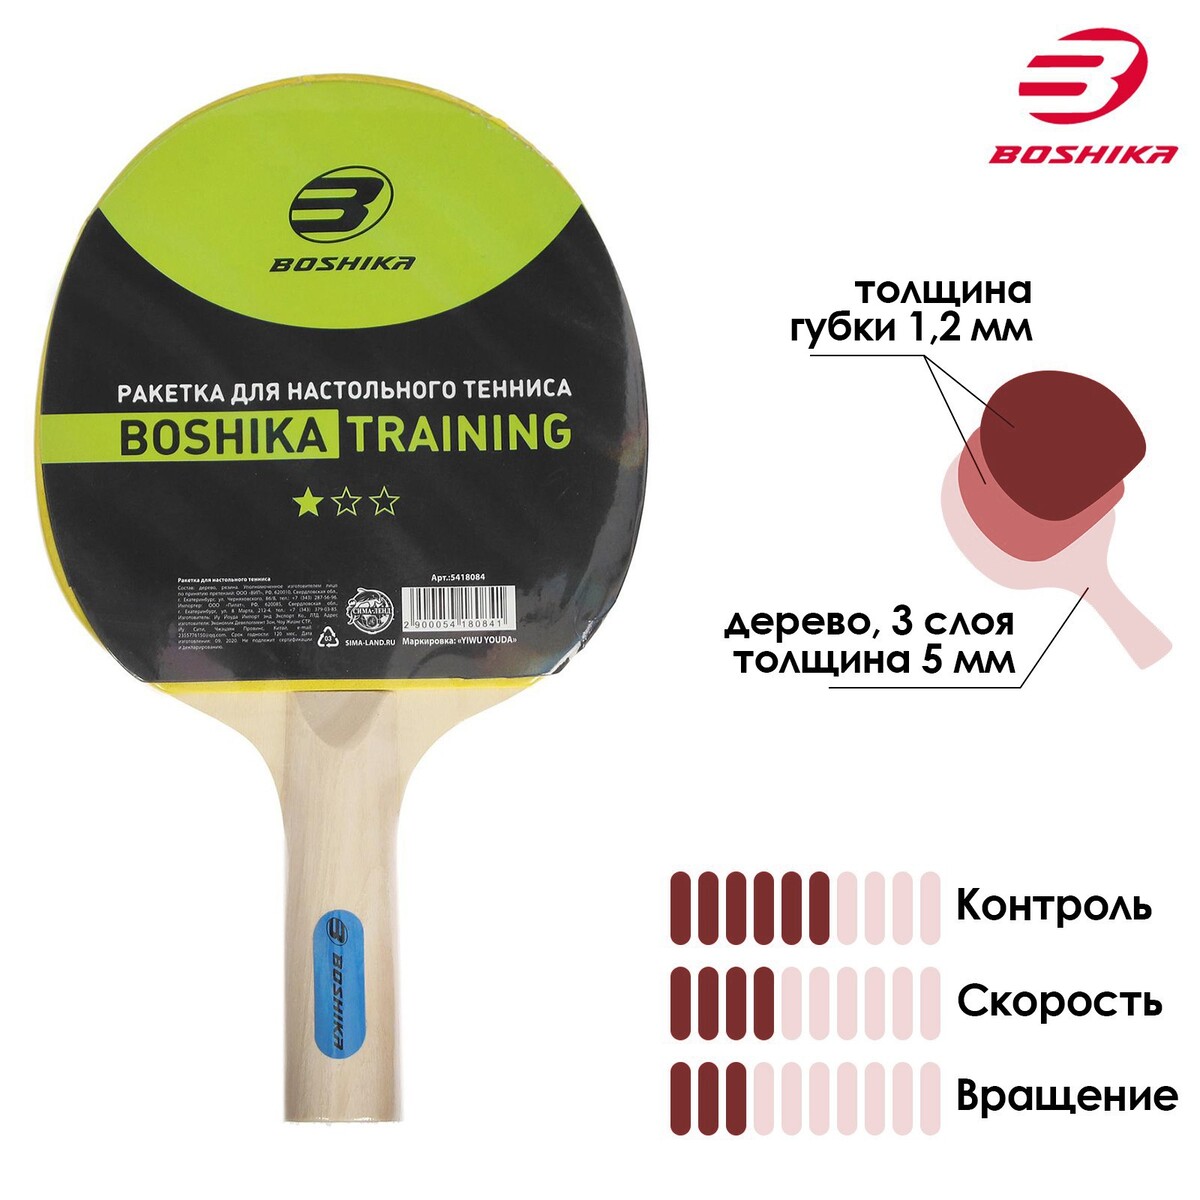 Ракетка для настольного тенниса boshika training, 1 звезда ракетка для настольного тенниса torres control для начинающих накладка 1 8 мм коническая ручка